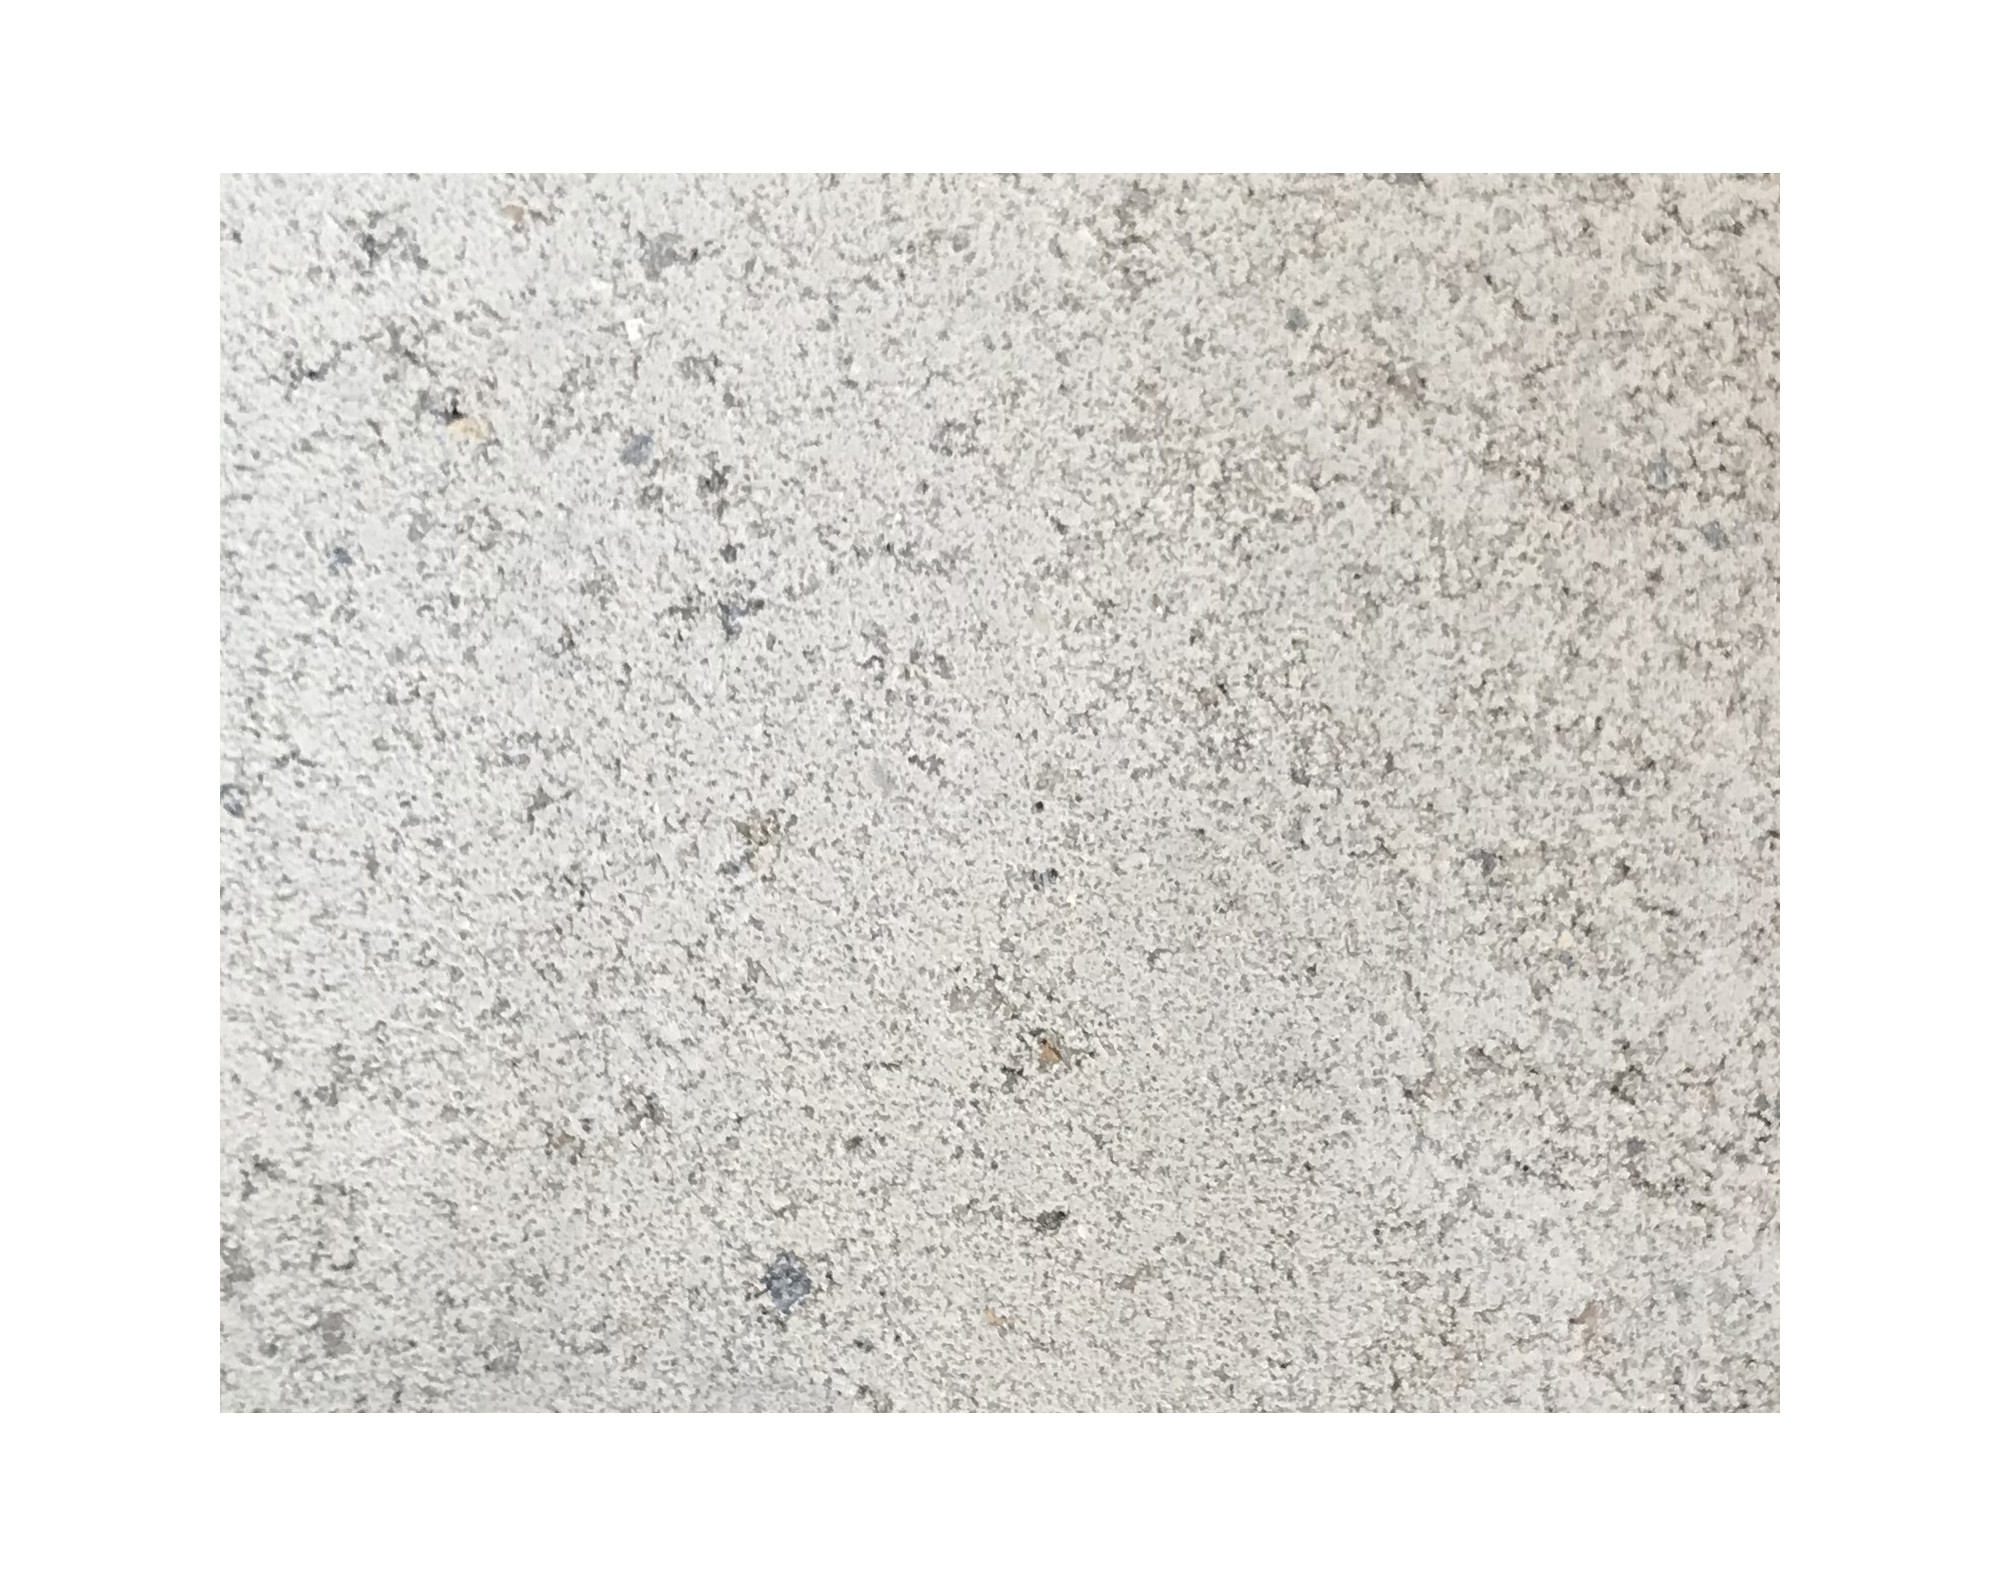 Harmo roc nevadaset, rustica-serie, ovaal d: 3,50mx7,50m, gebroken wit, beton